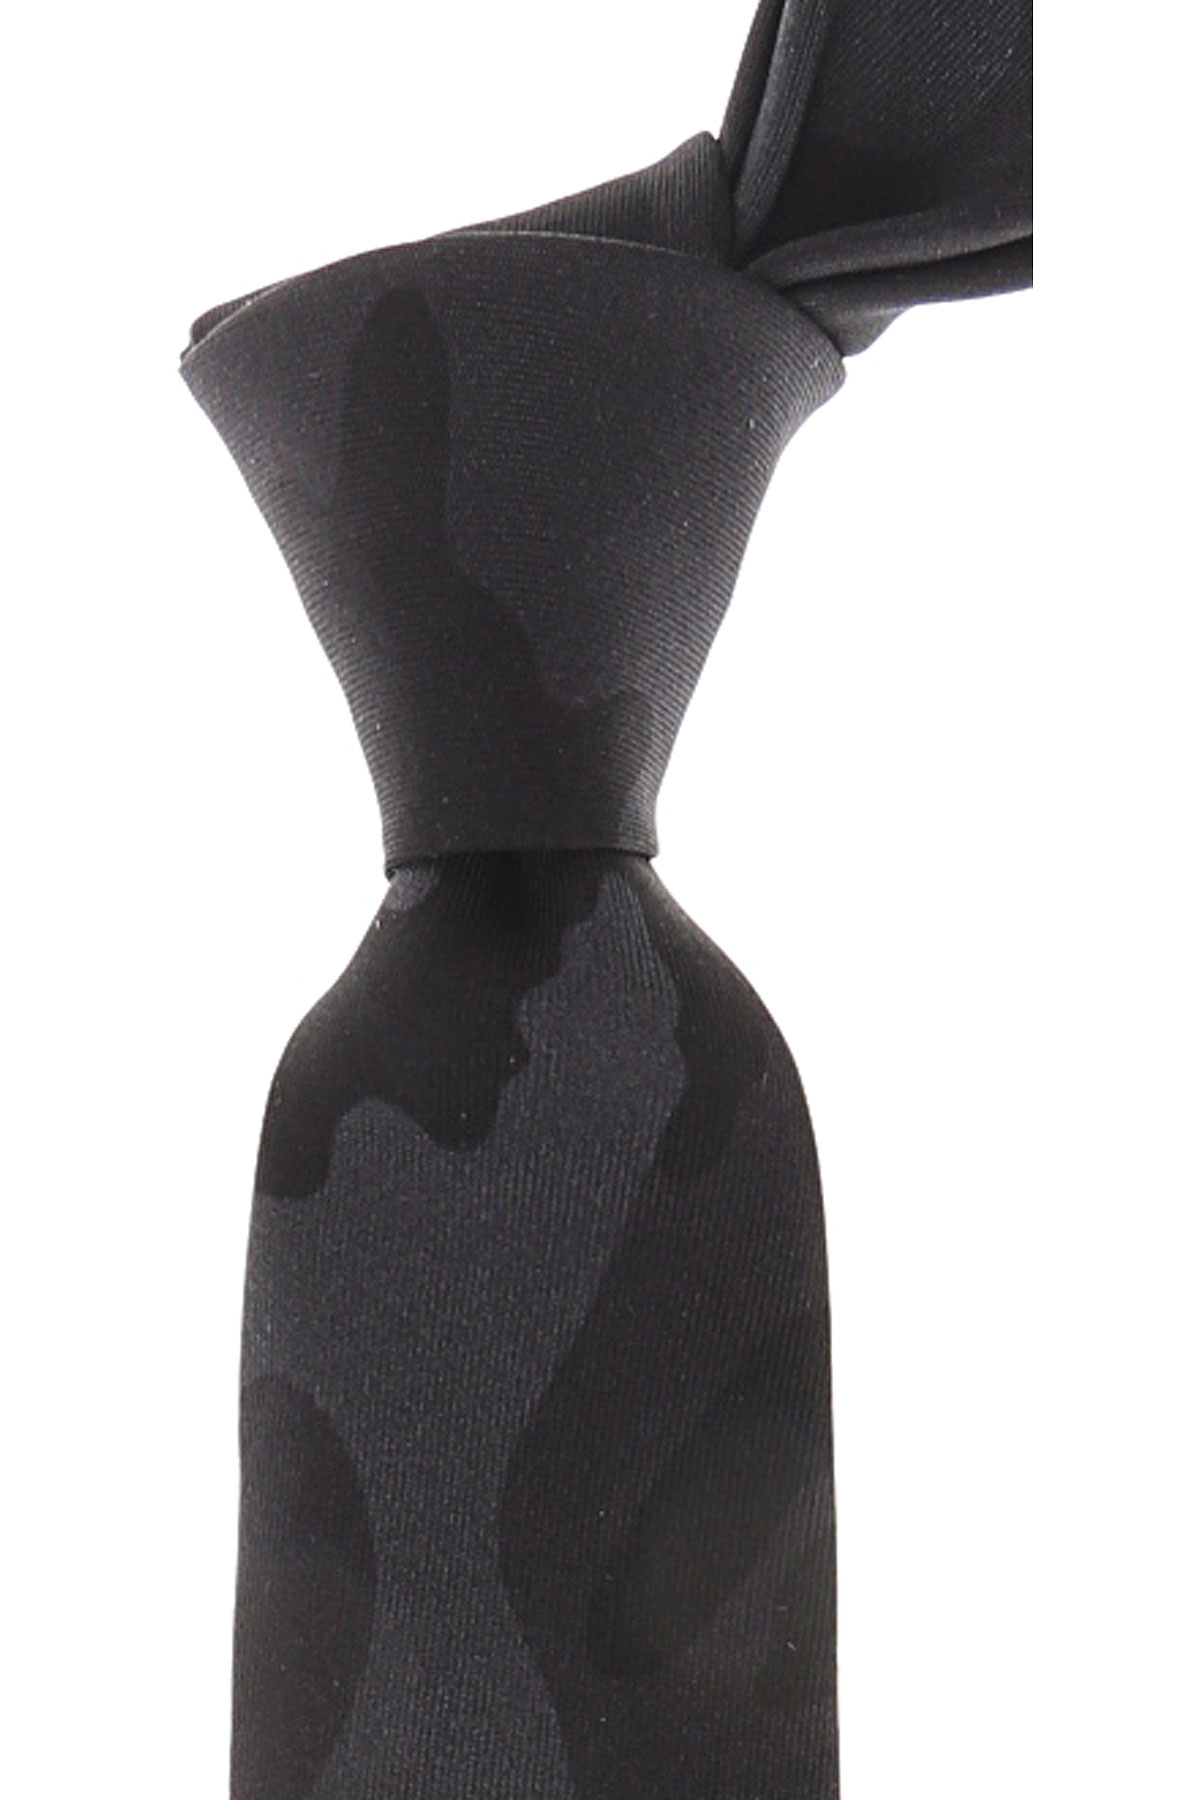 Cravates Valentino , Noir camouflage, Soie, 2017